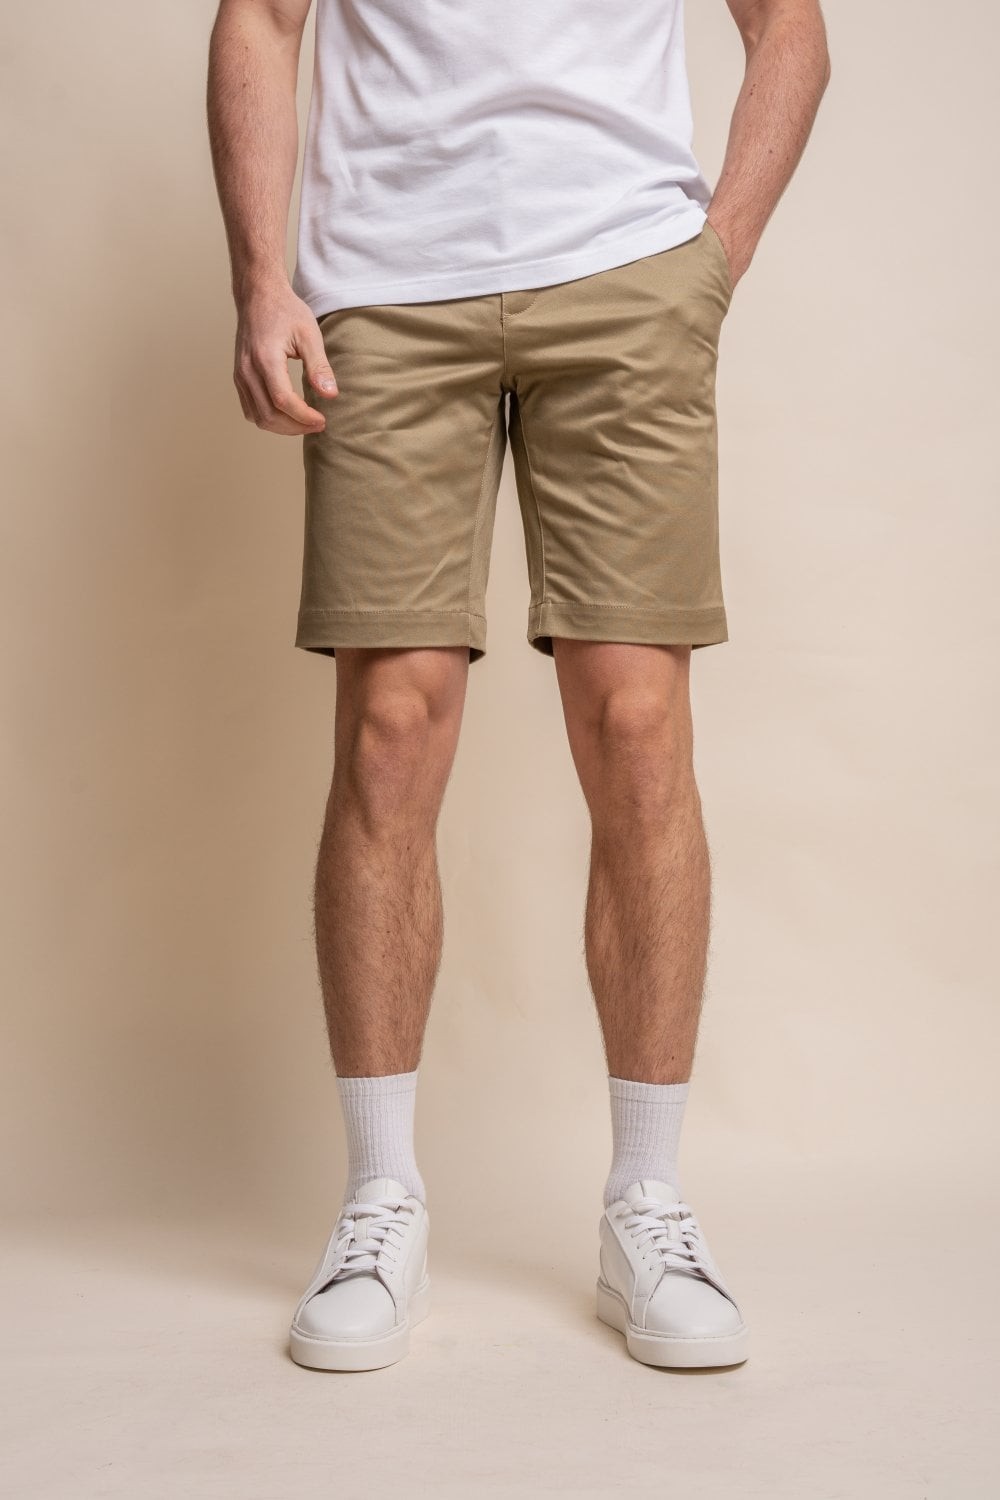 Herren Casual Slim Fit Chino Shorts aus Baumwolle - DAKOTA - Stein Beige